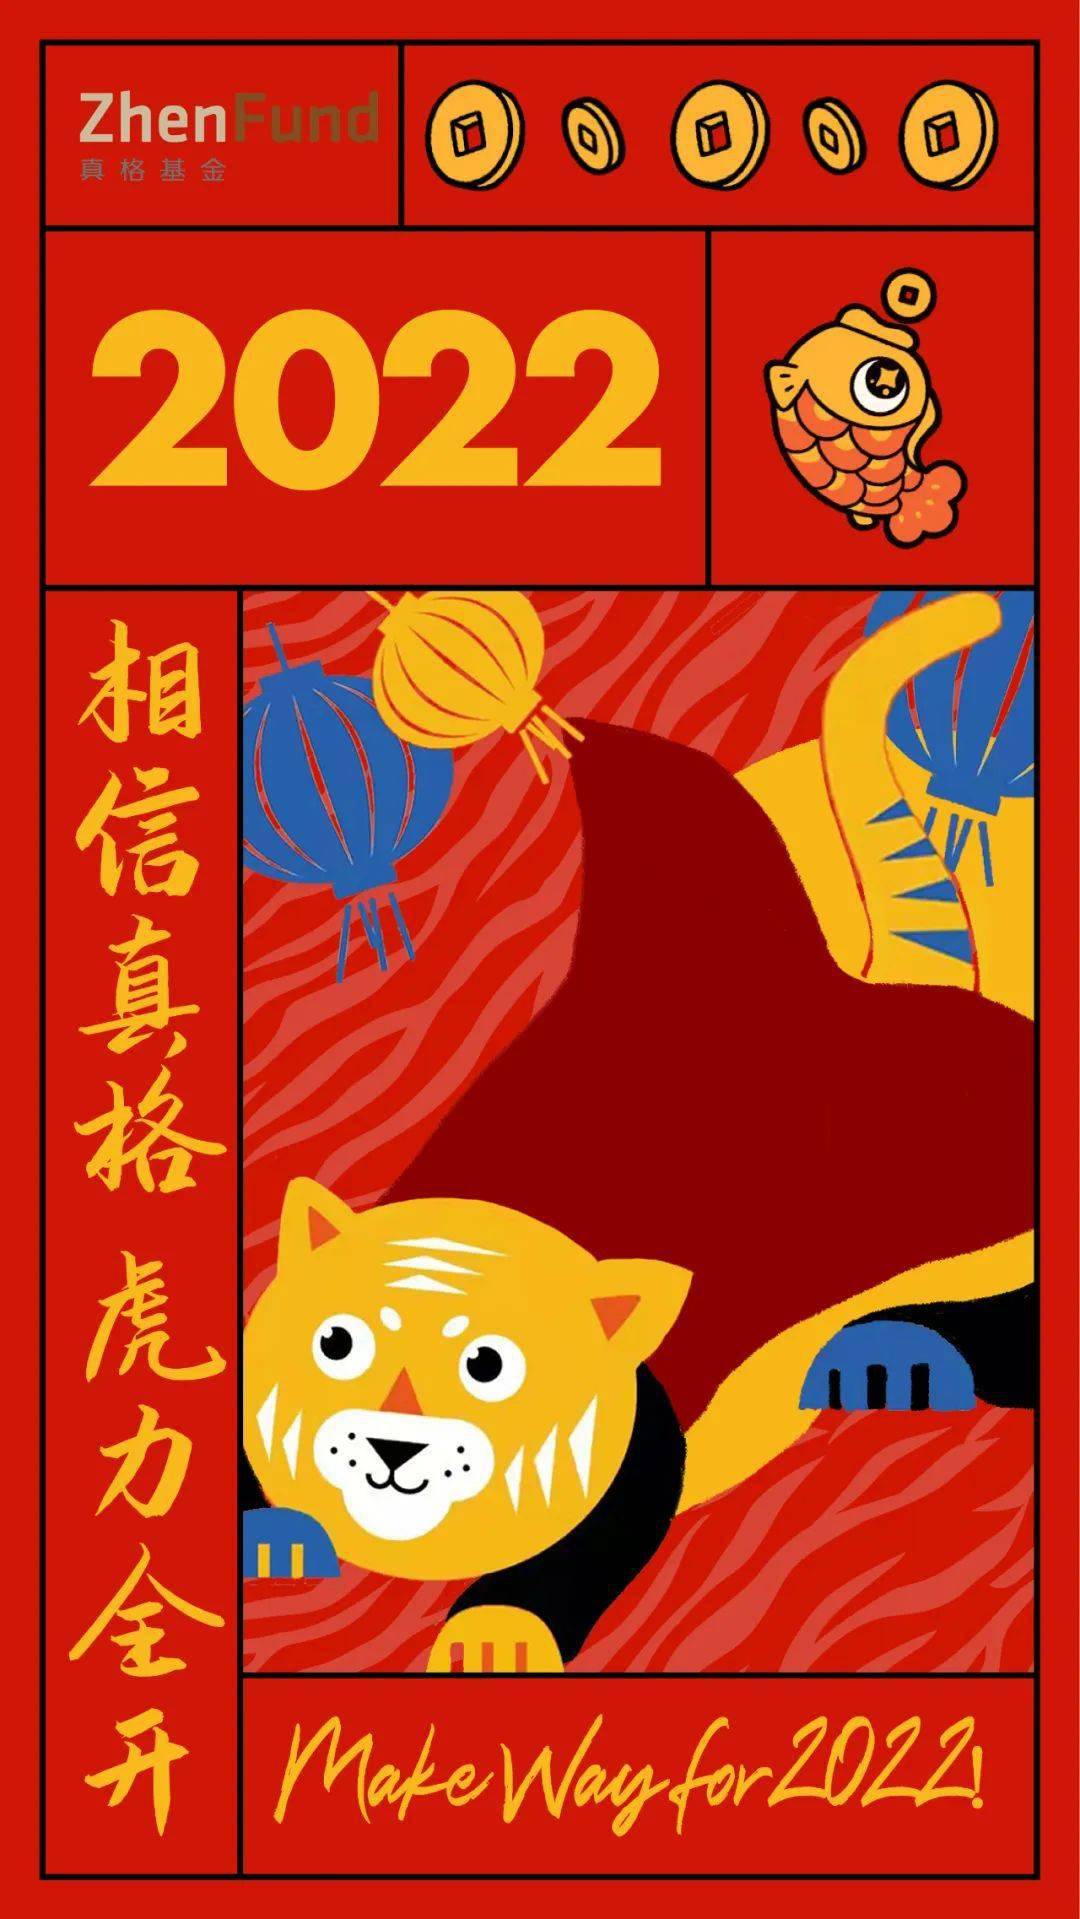 福虎生风,虎年吉祥 2022,和真格一起力全开 后台回复带 虎 字的吉祥语, 领取真格基金新年专属封面